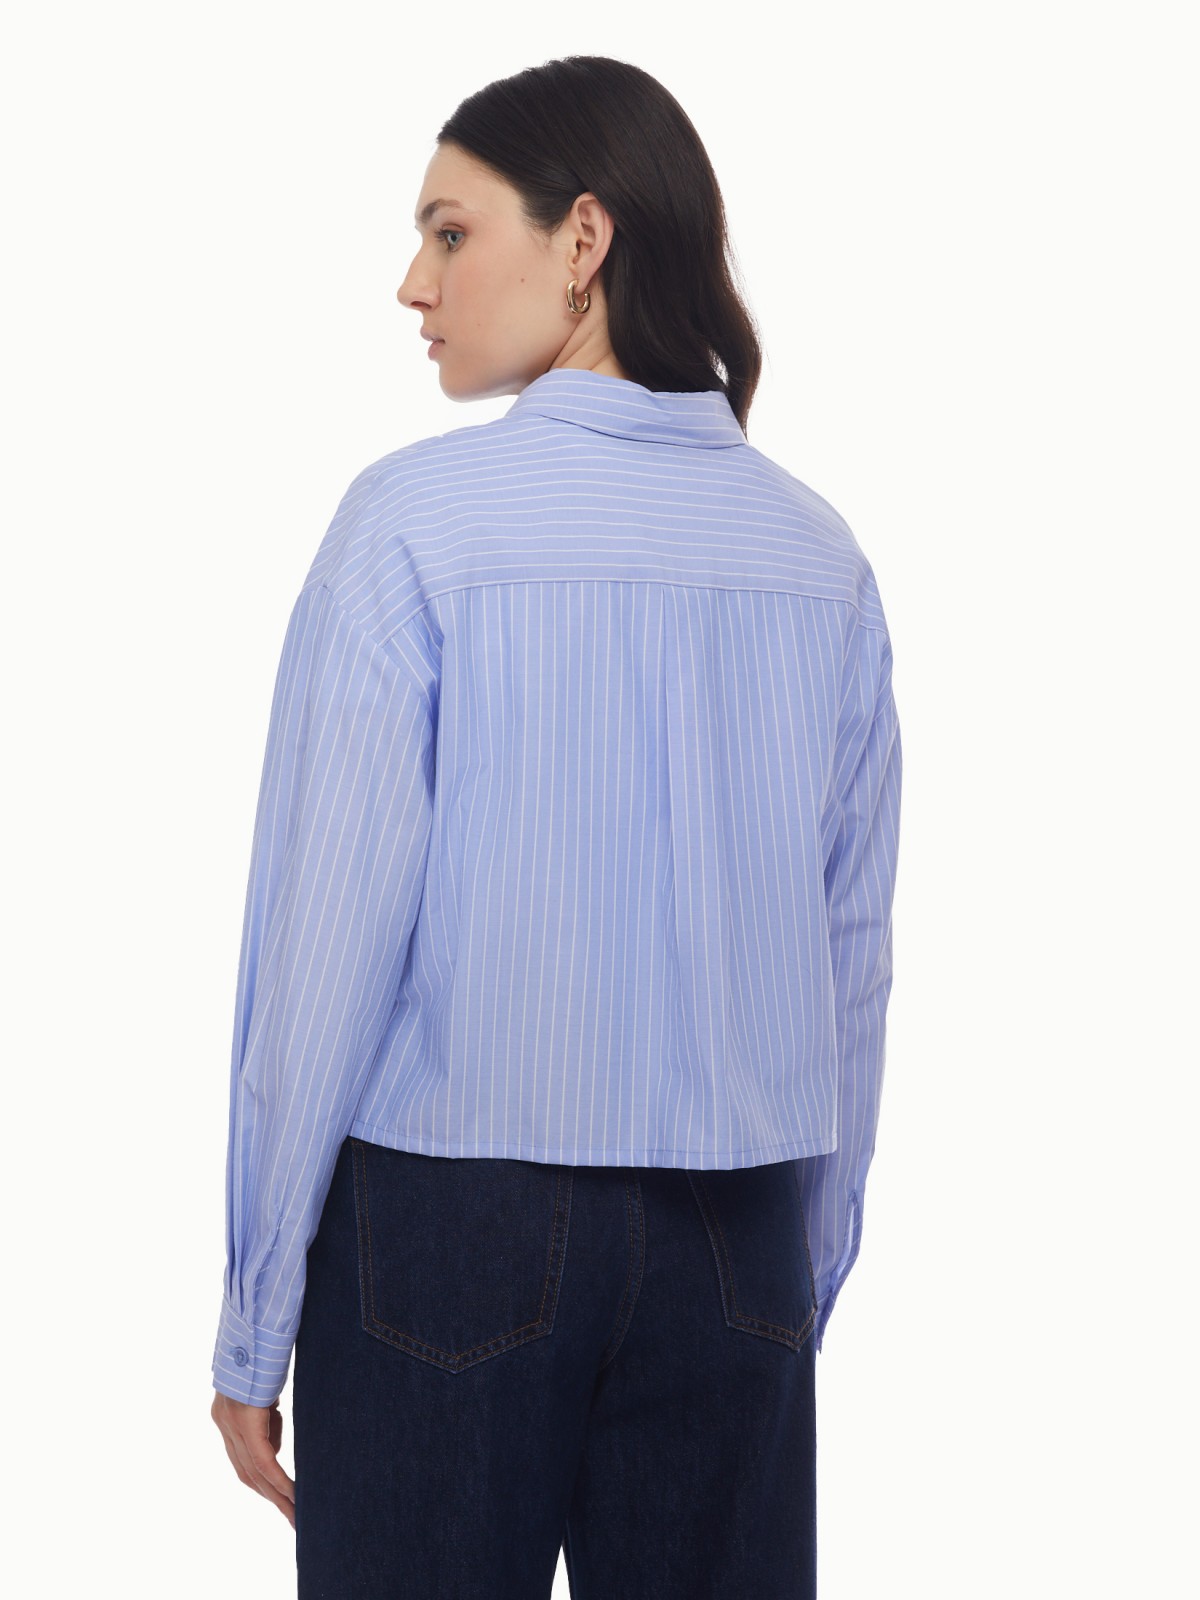 Рубашка укороченного силуэта с узором в полоску zolla 024131159163, цвет светло-голубой, размер XS - фото 6